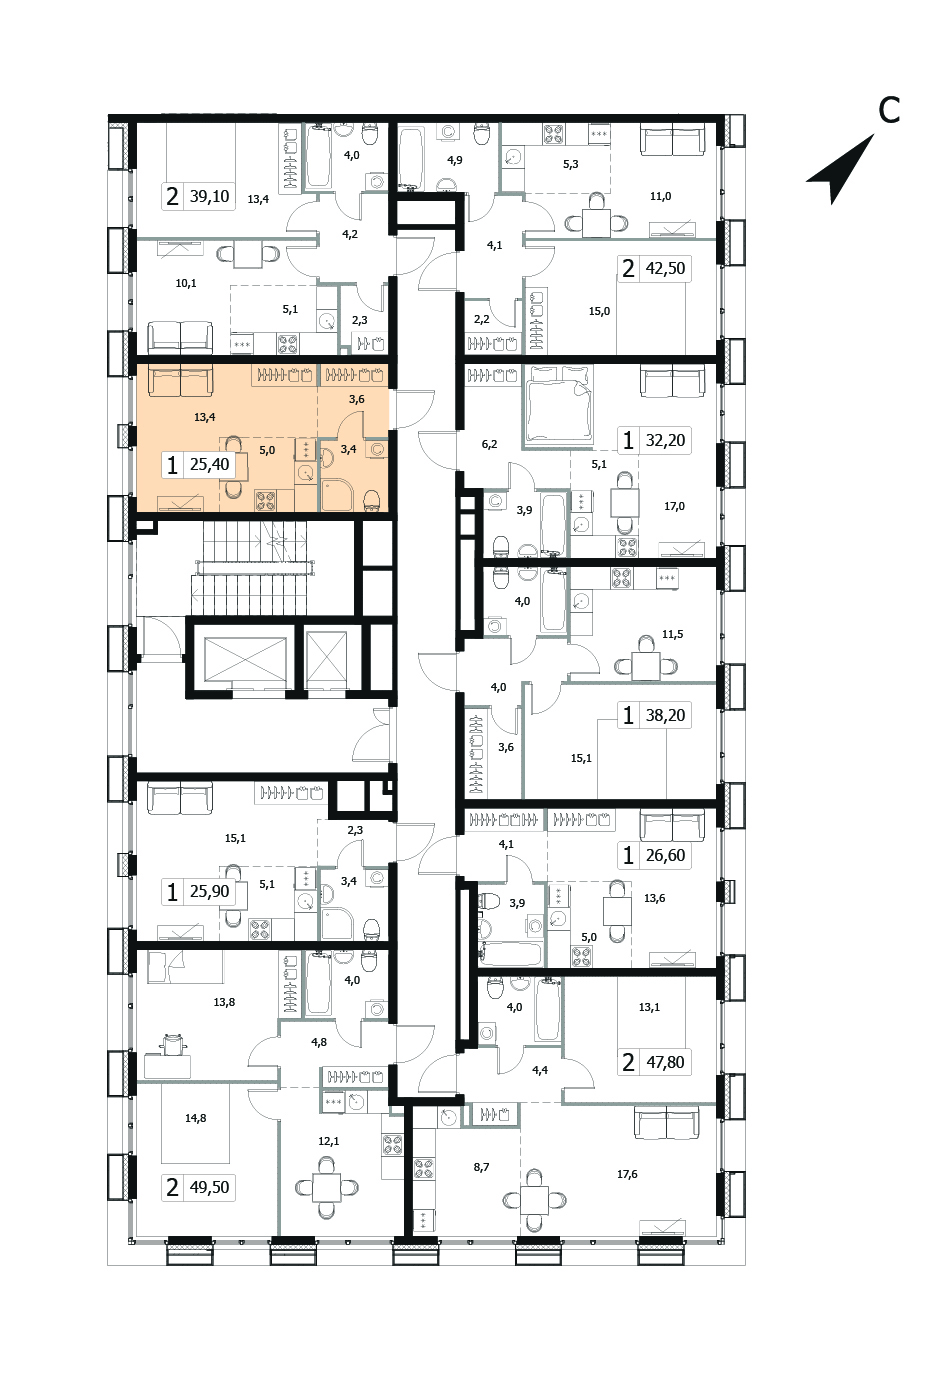 Однокомнатная квартира 25.4м², 4 этаж, Корпус 5 Жилой комплекс «Заречный квартал»